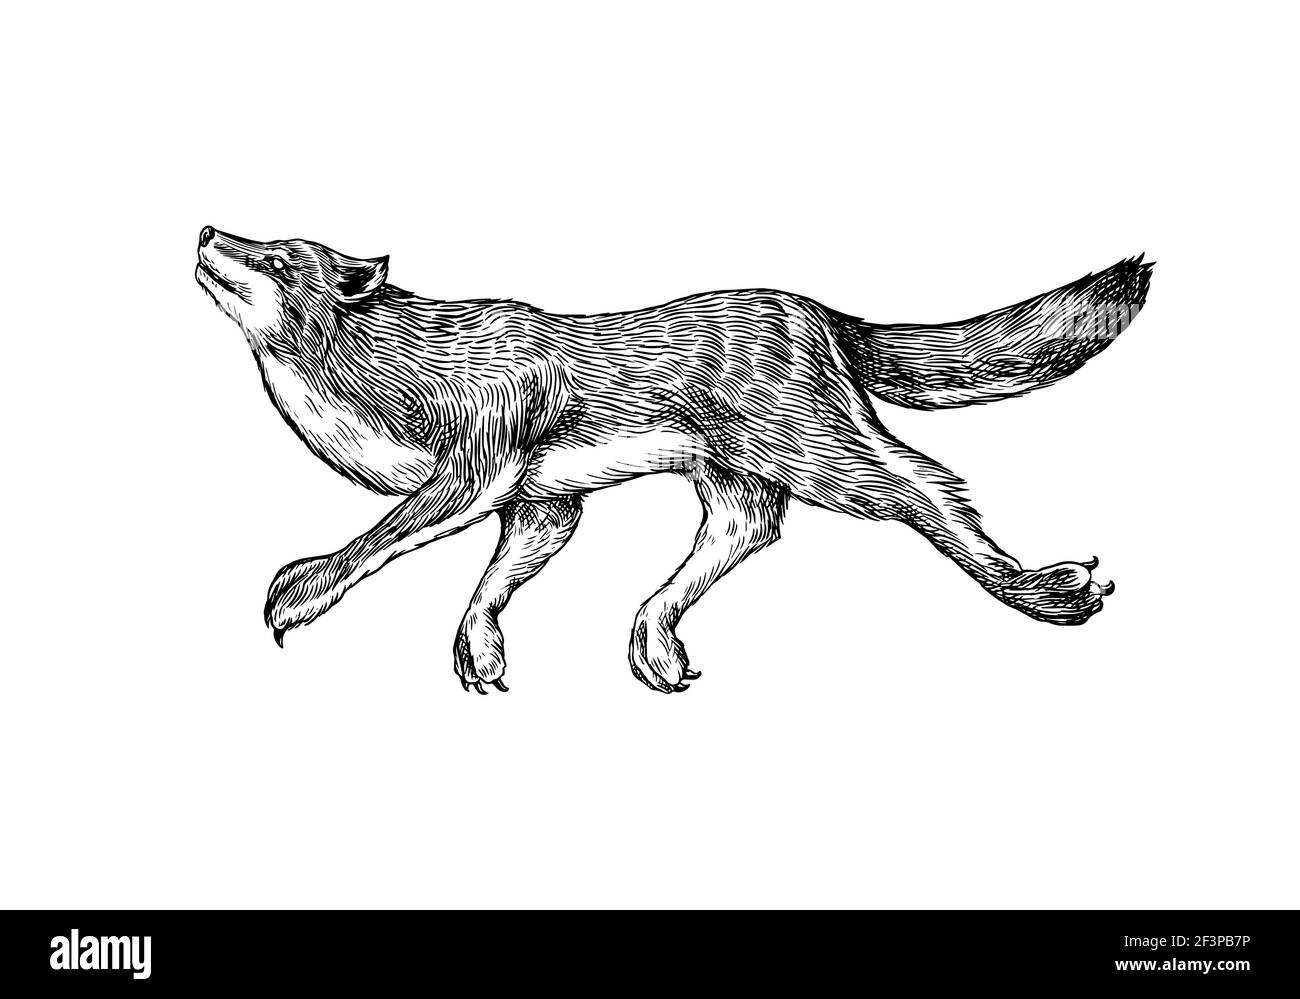 Grauer Wolf. Grauer Wolf. Ein Raubtier. Wildwald Tier springen. Vektor graviert Hand gezeichnet Vintage alte Skizze für Stempel, T-Shirt oder Typografie oder Stock Vektor